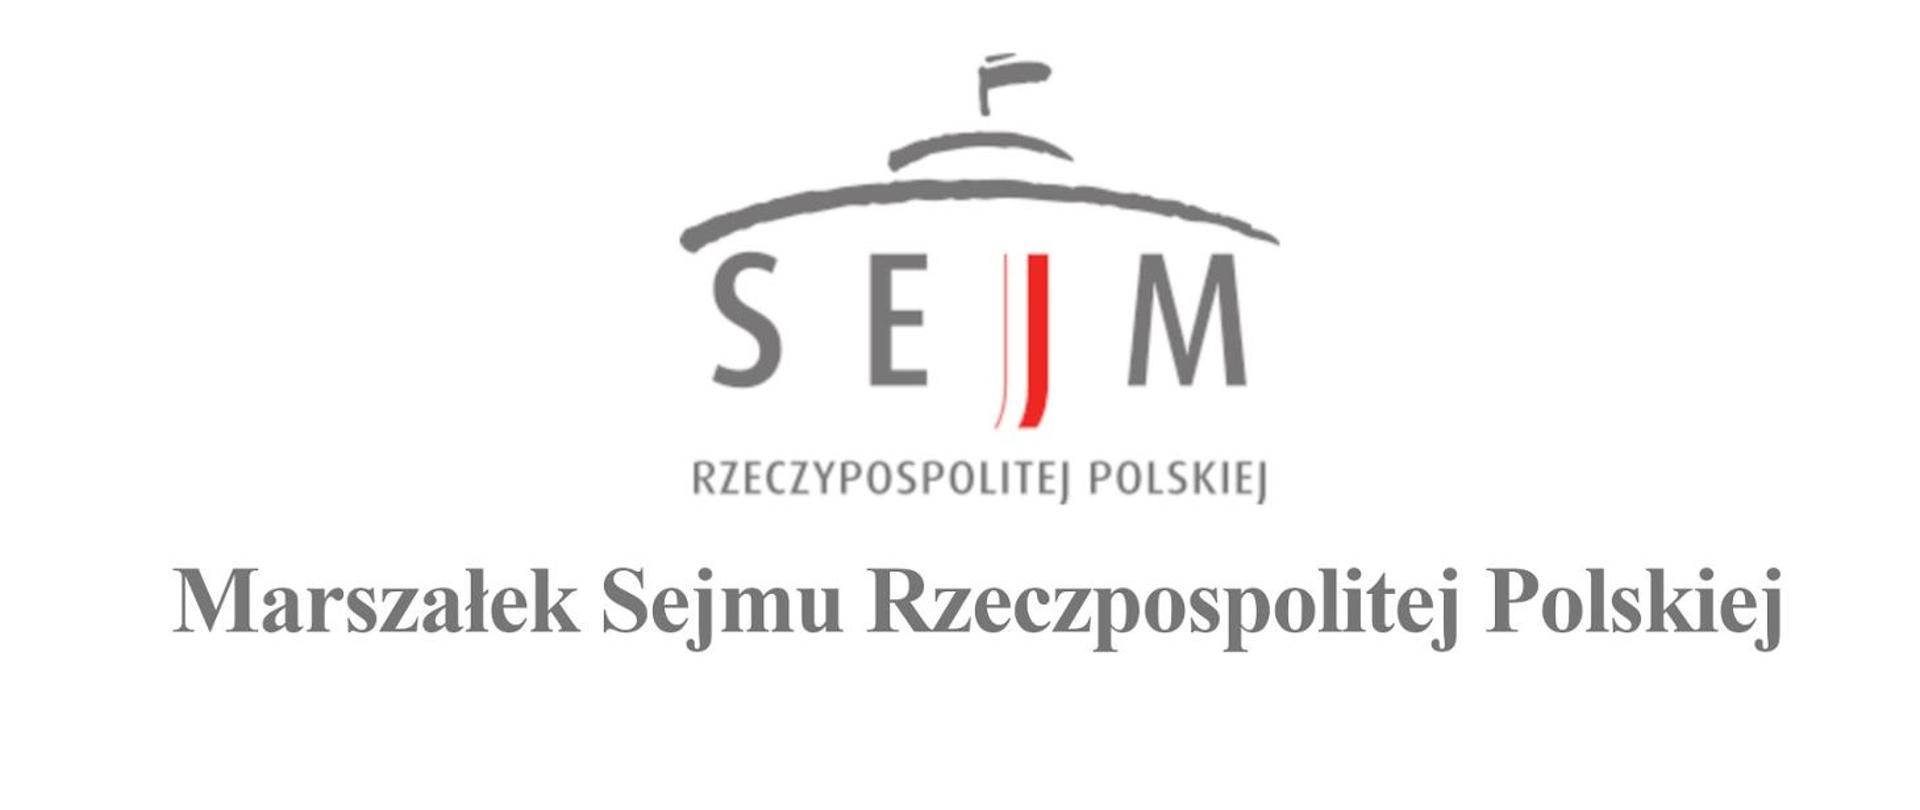 Zdjęcie przedstawia logo Sejmu Rzeczypospolitej Polskiej